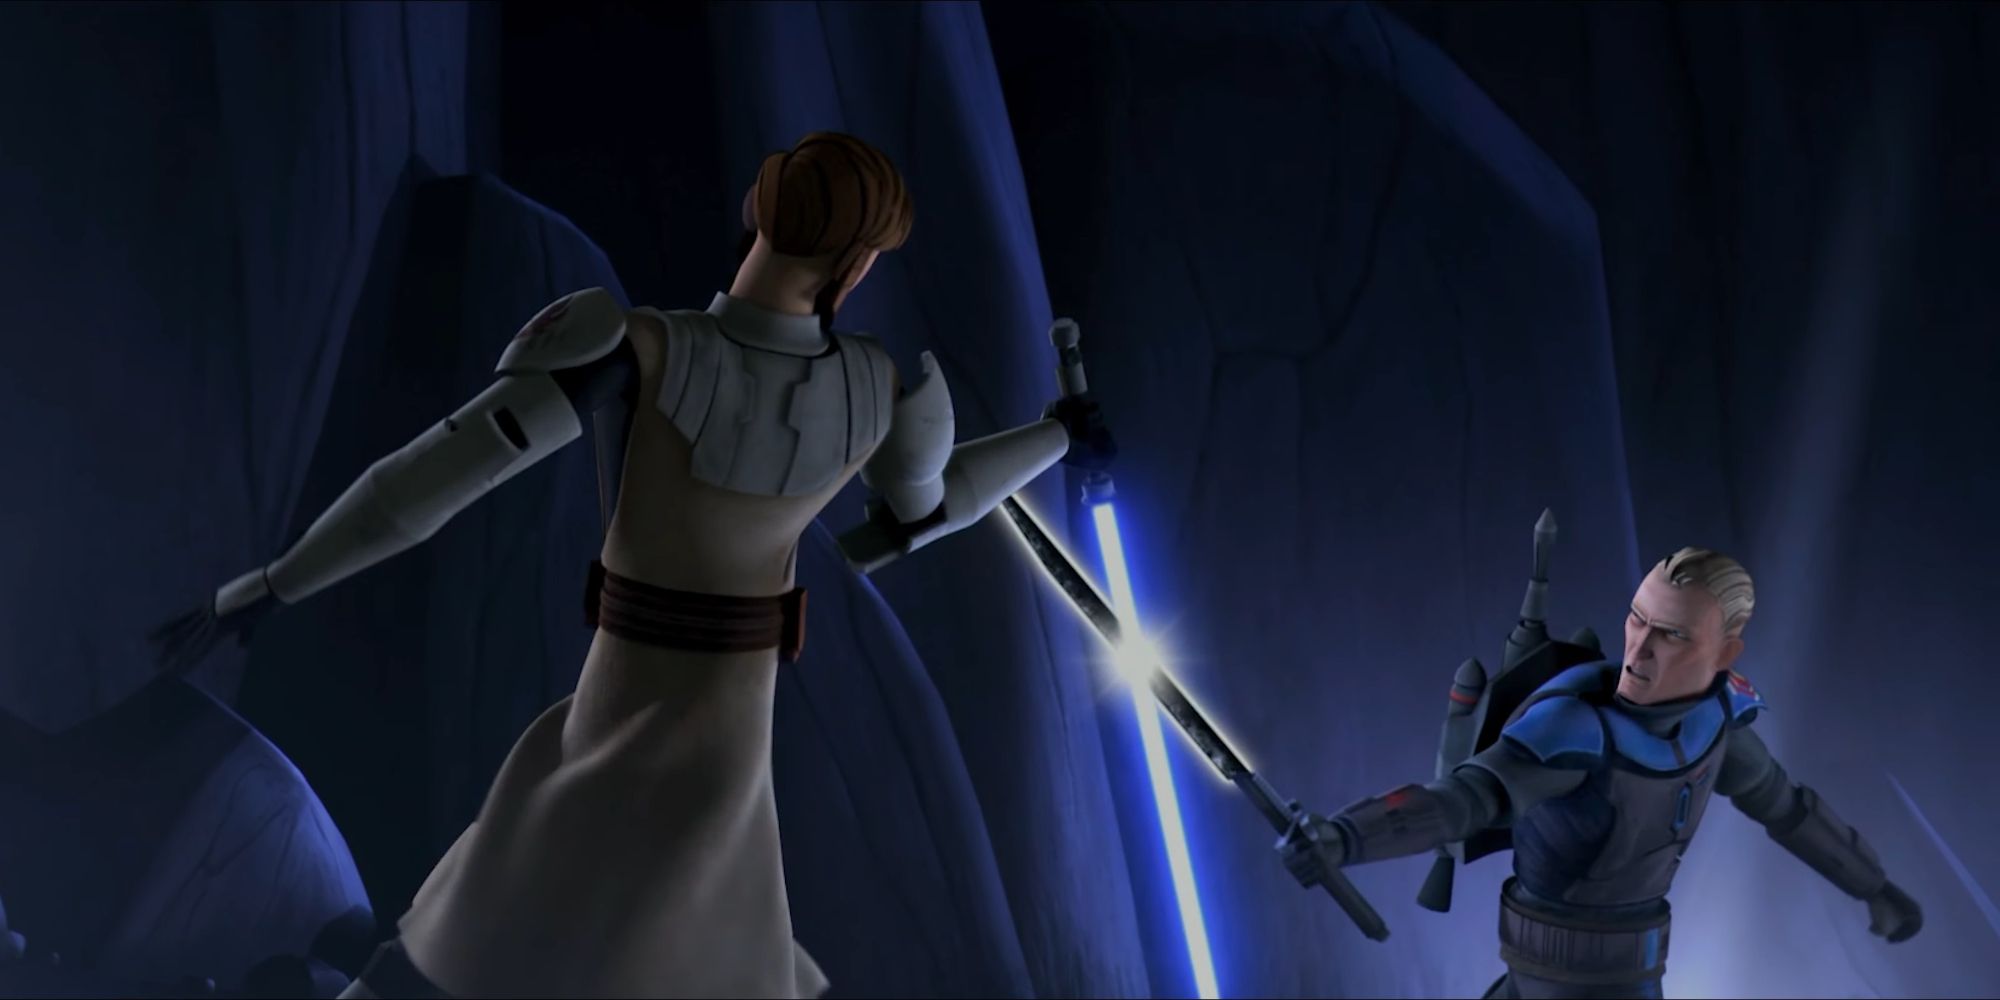 Obi-Wan Kenobi fighting Pre Visla in Star Wars The Clone Wars